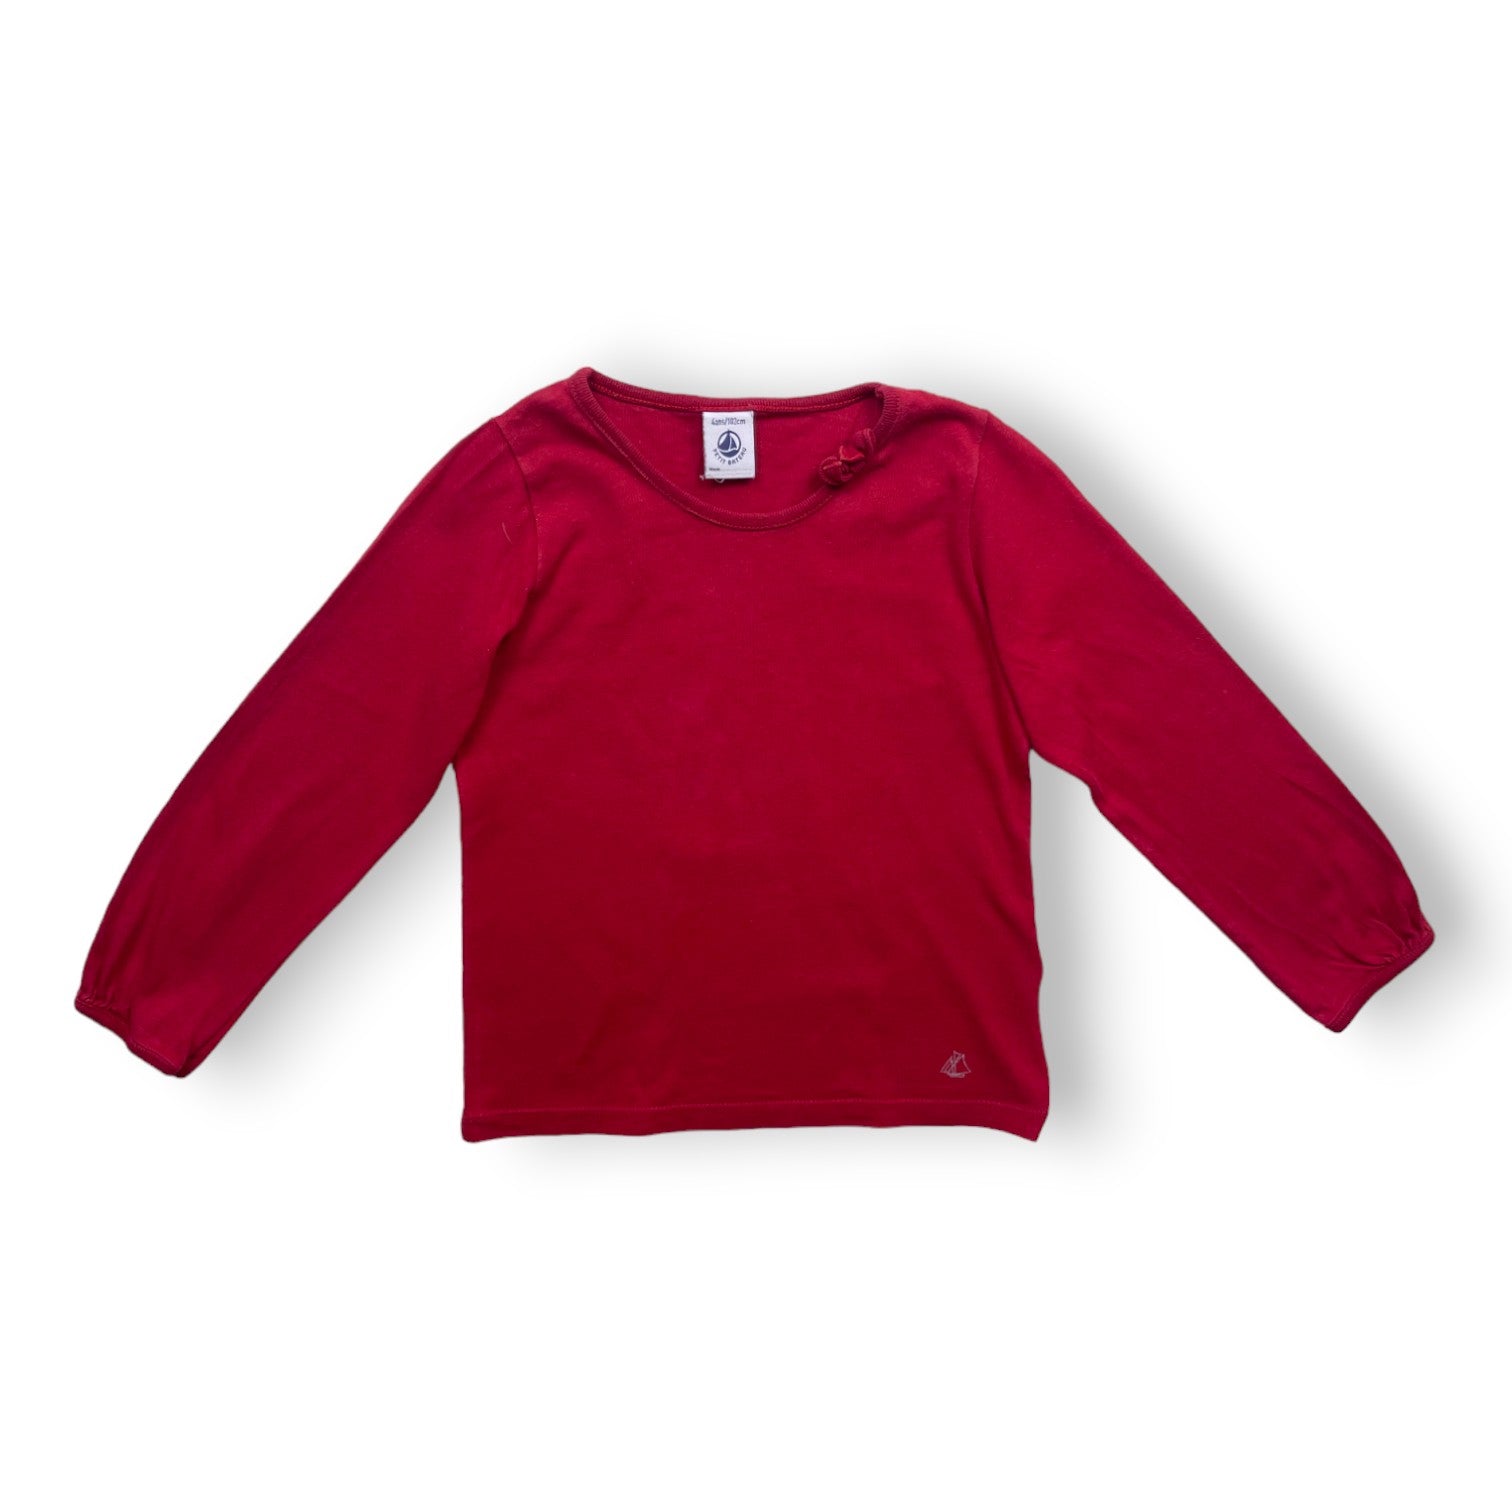 PETIT BATEAU - T shirt manches longues rouge - 4 ans